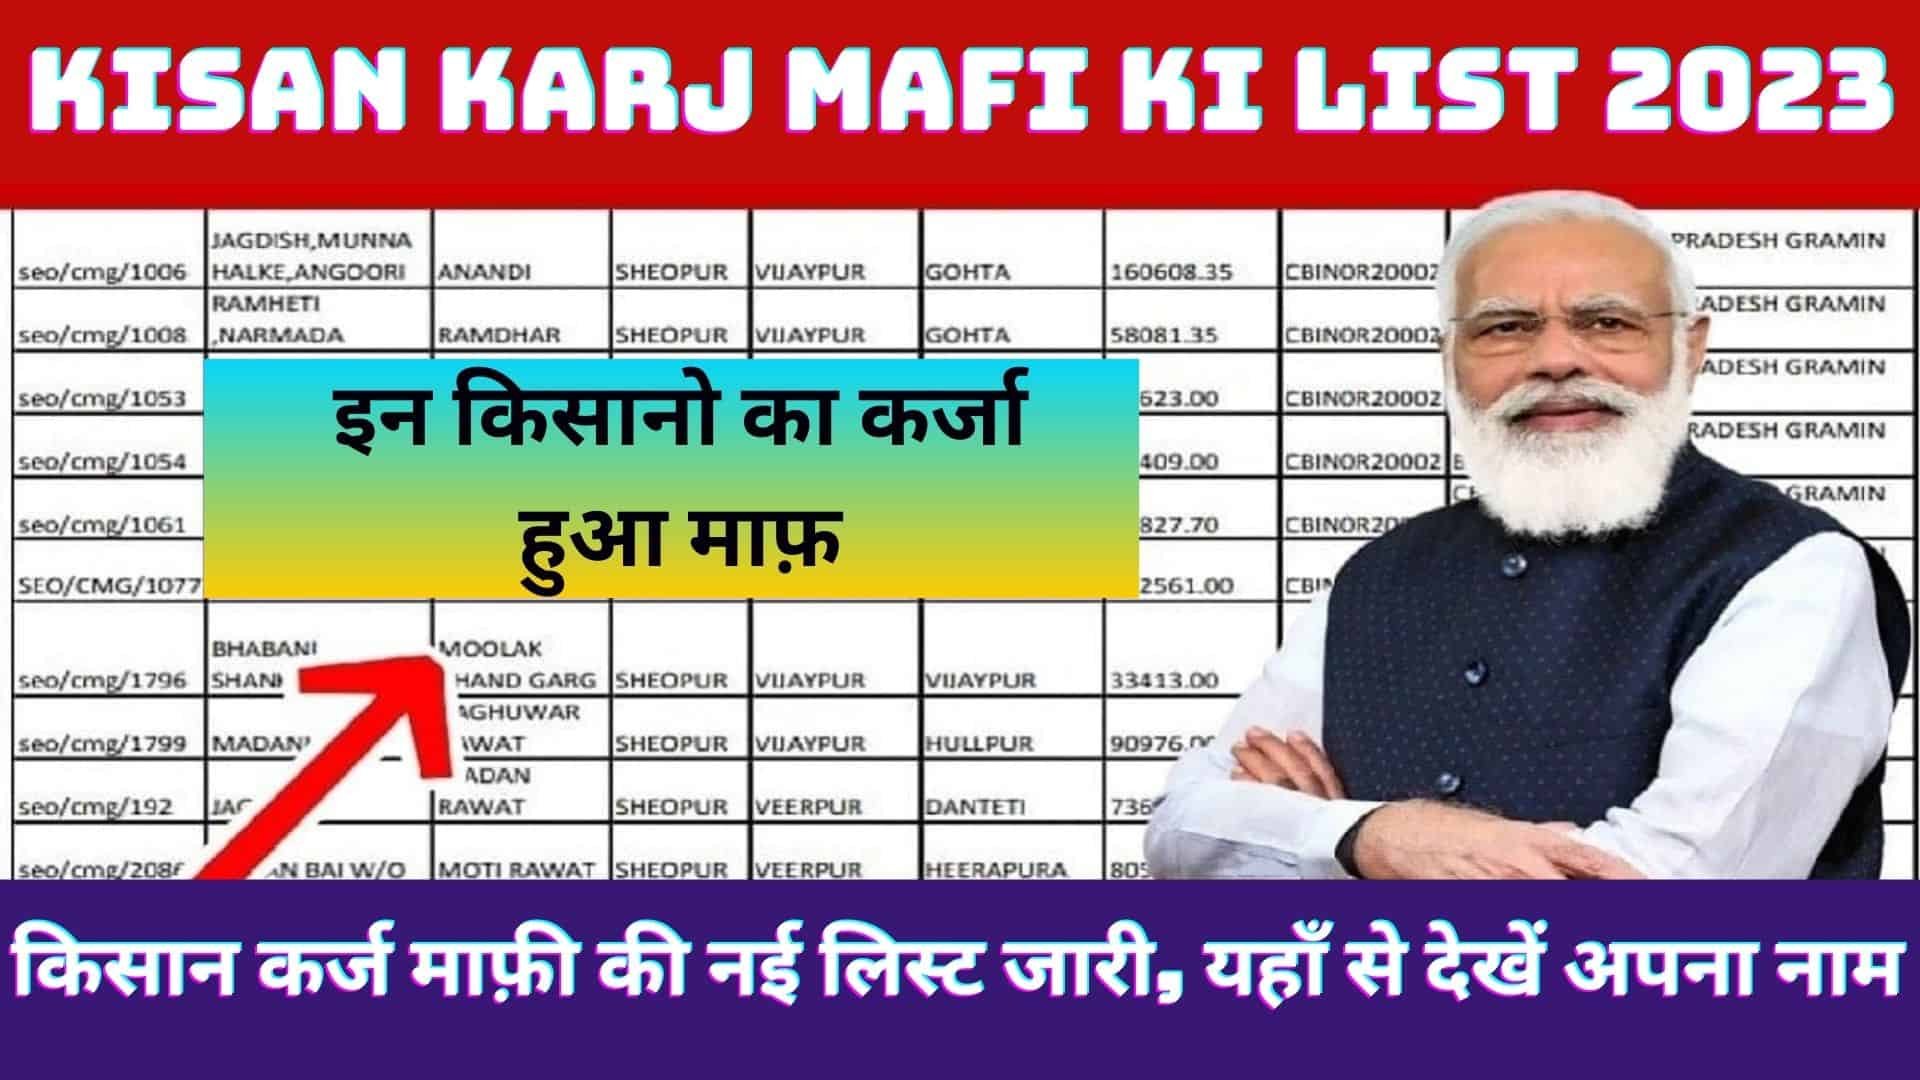 Kisan Karj Mafi Ki List 2023 : किसान कर्ज माफ़ी की नई लिस्ट जारी, यहाँ से देखें अपना नाम